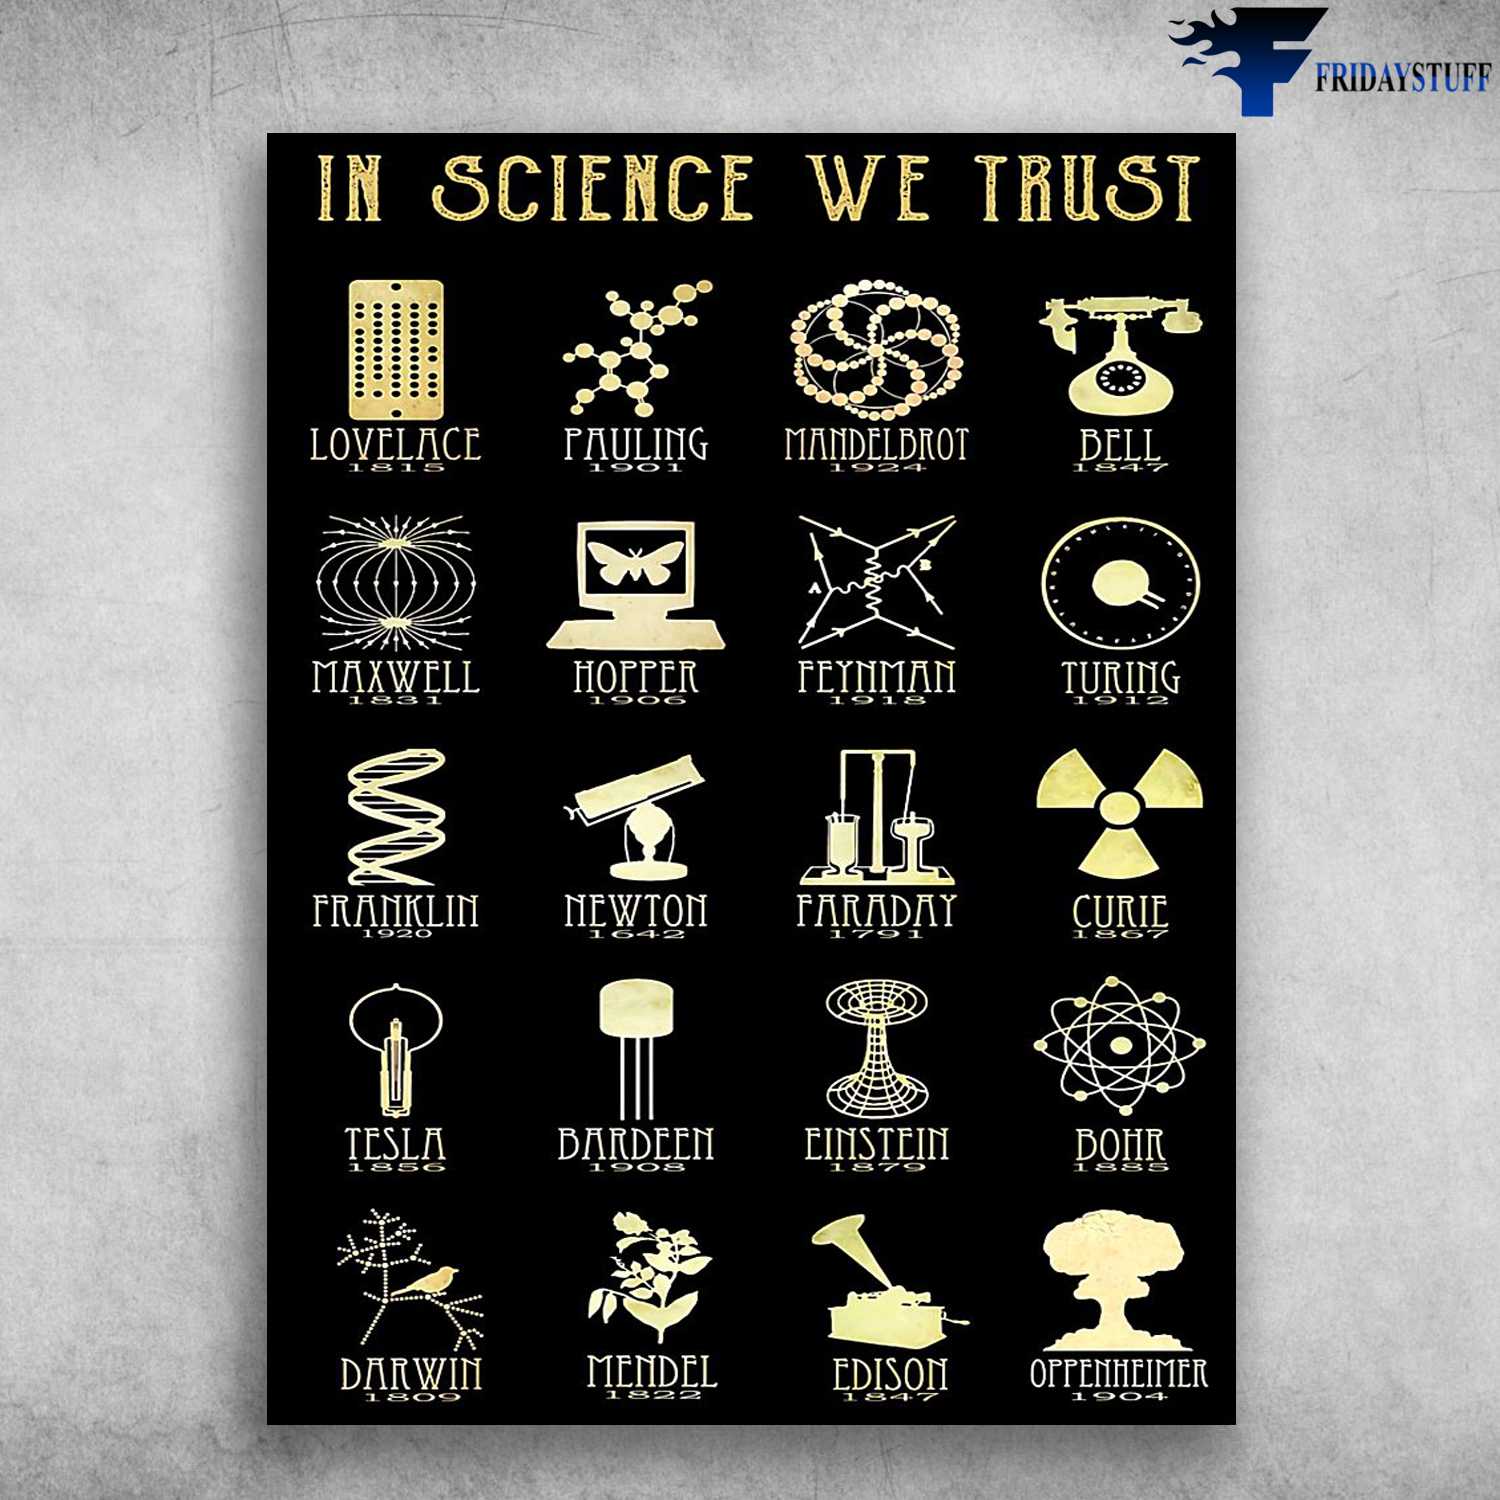 In Science, We Trust Lovelace, Pauling, Mandelbrot, Bell, Maxwell, Hopper, Feynman